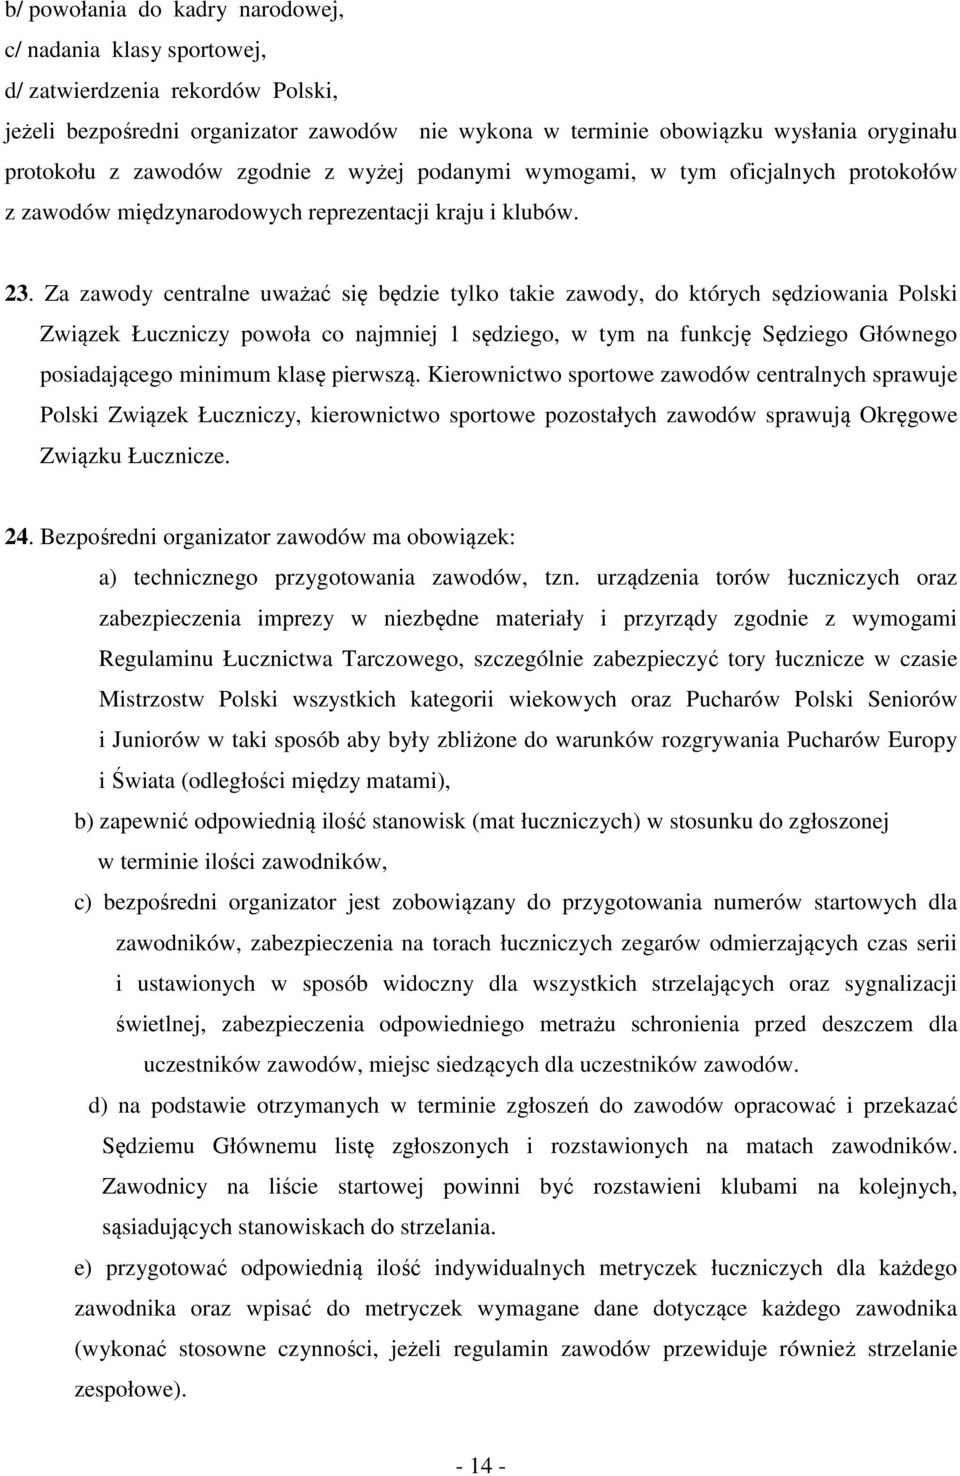 Za zawody centralne uważać się będzie tylko takie zawody, do których sędziowania Polski Związek Łuczniczy powoła co najmniej 1 sędziego, w tym na funkcję Sędziego Głównego posiadającego minimum klasę